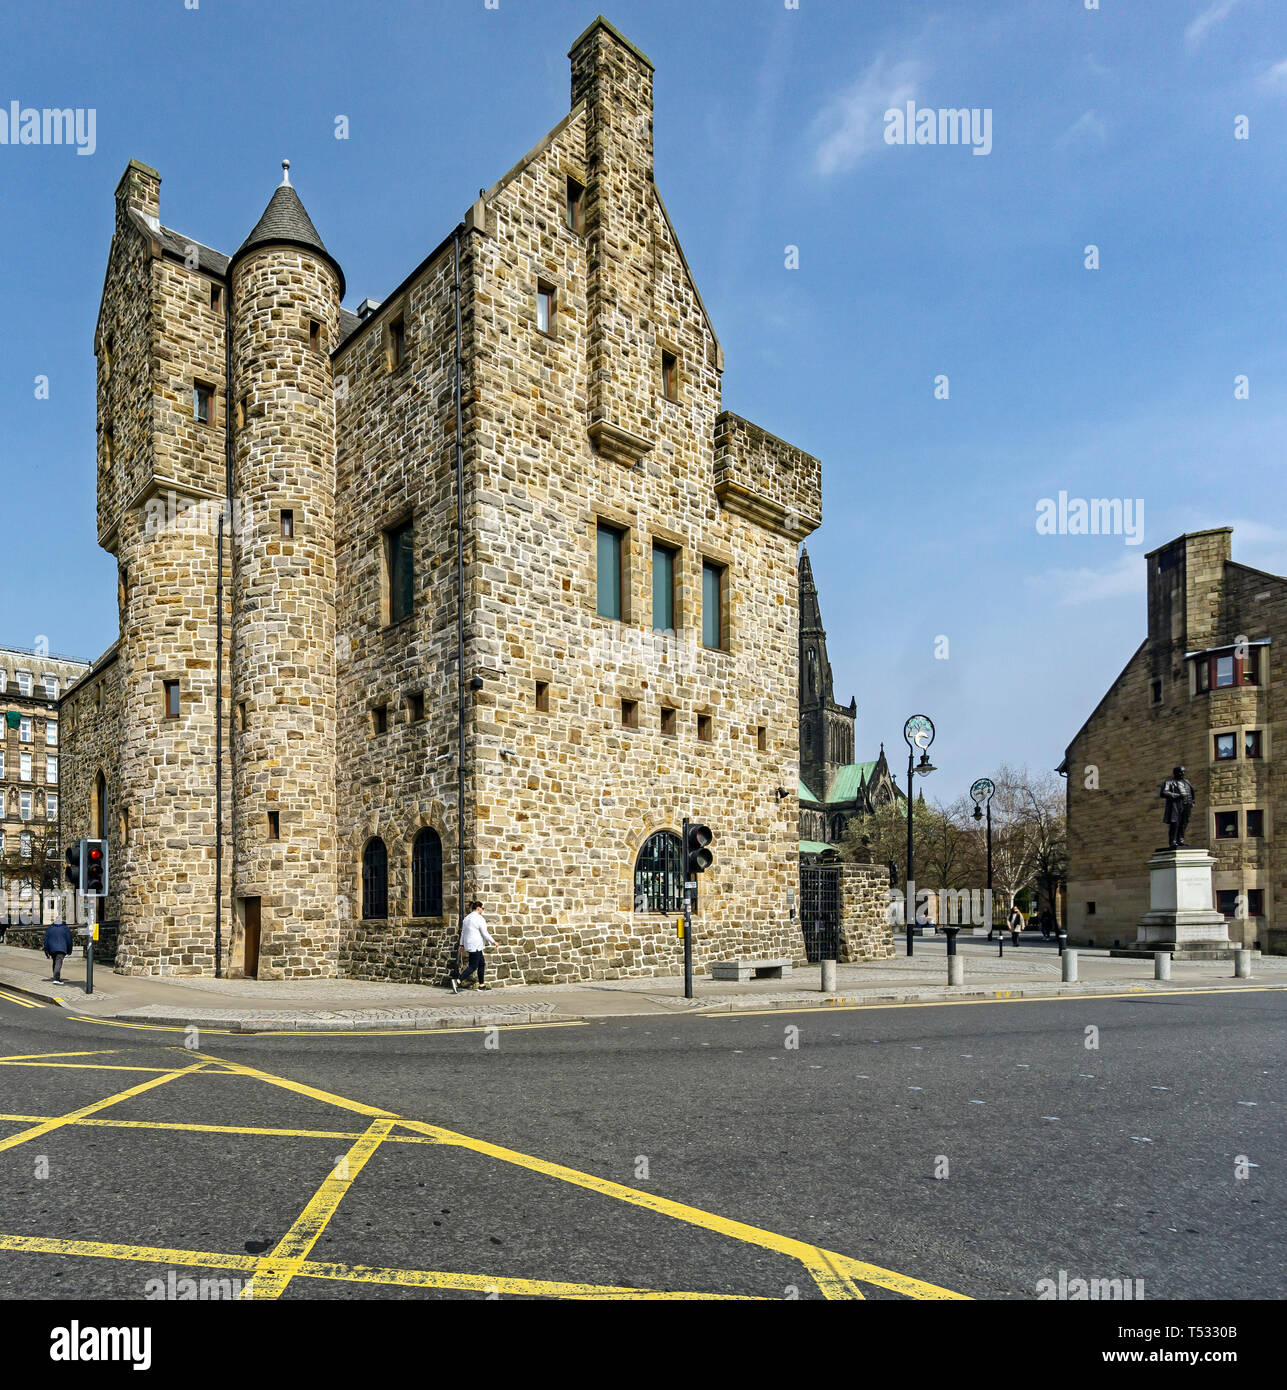 St Mungo Museum of Religious Life and Art, à l'angle de la rue du Château et la place de la cathédrale à Glasgow Scotland UK Banque D'Images